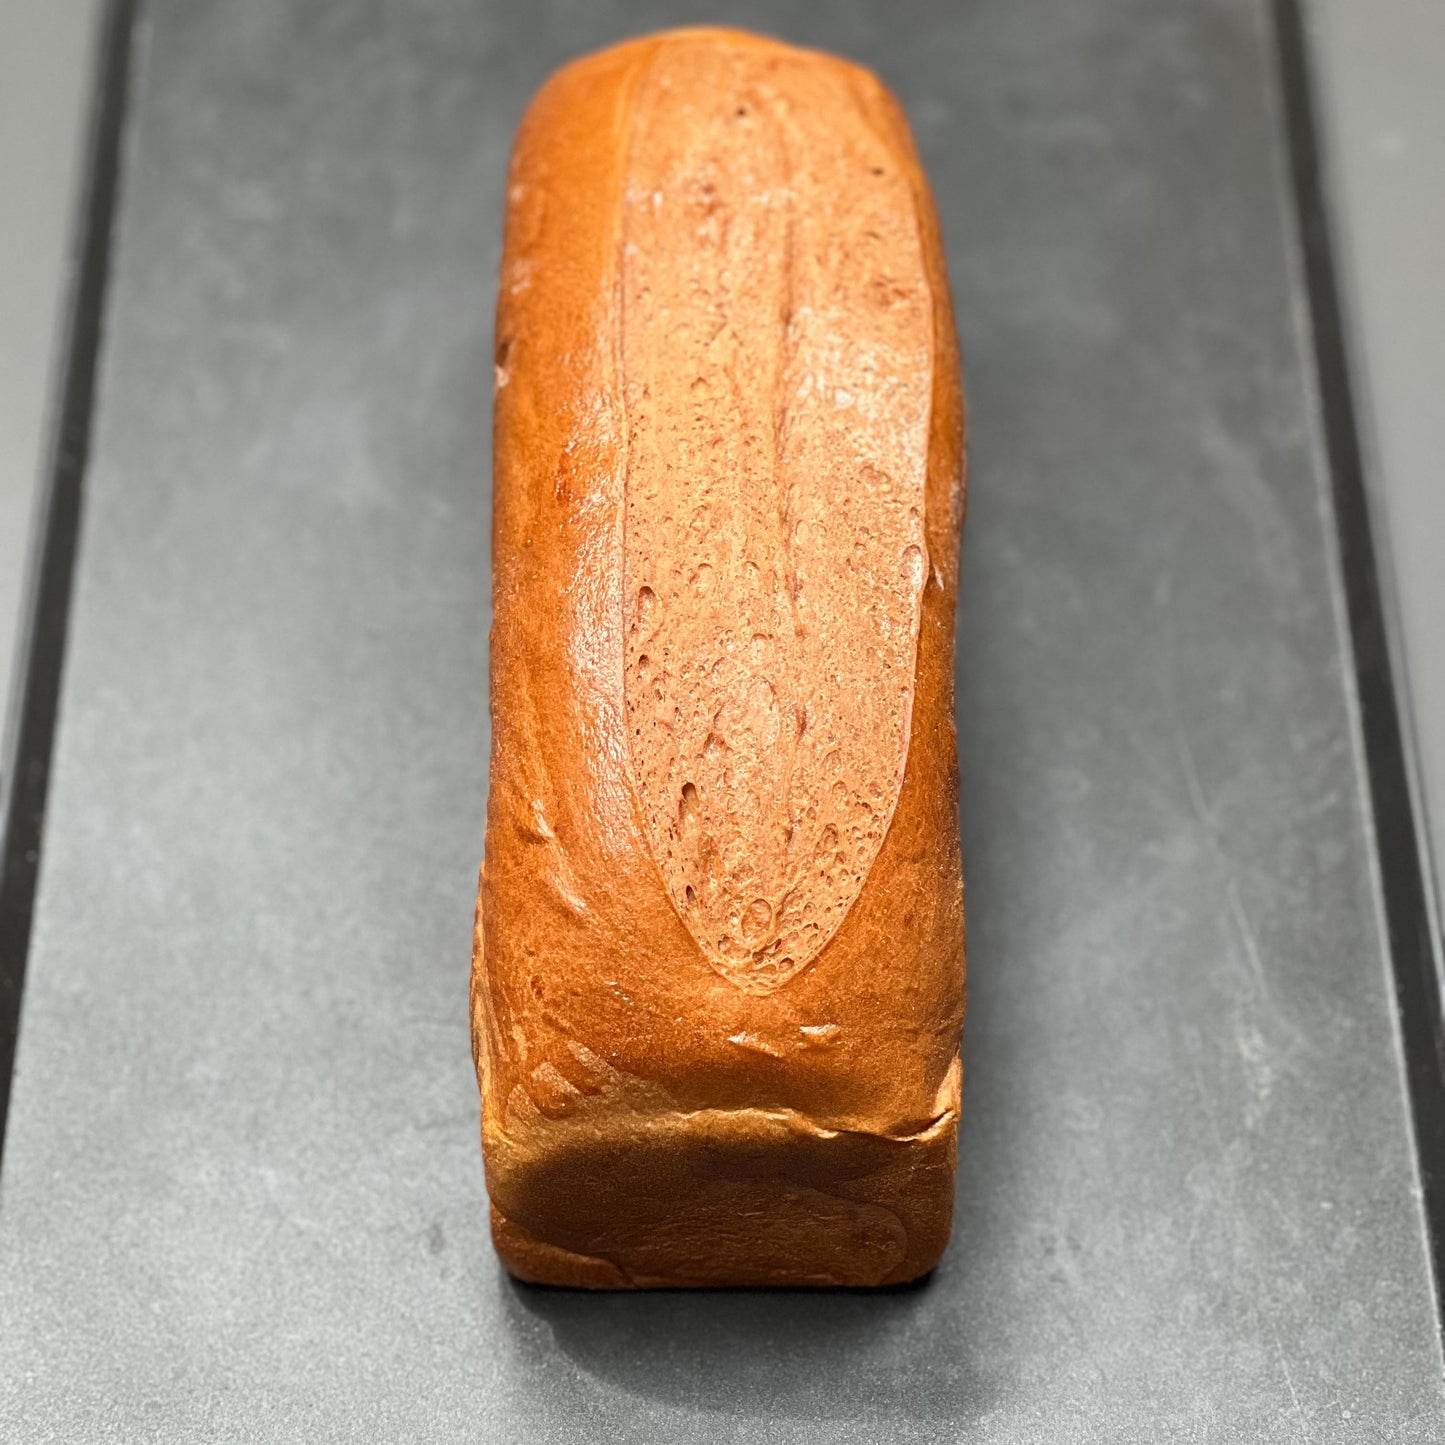 Pan brioche molde